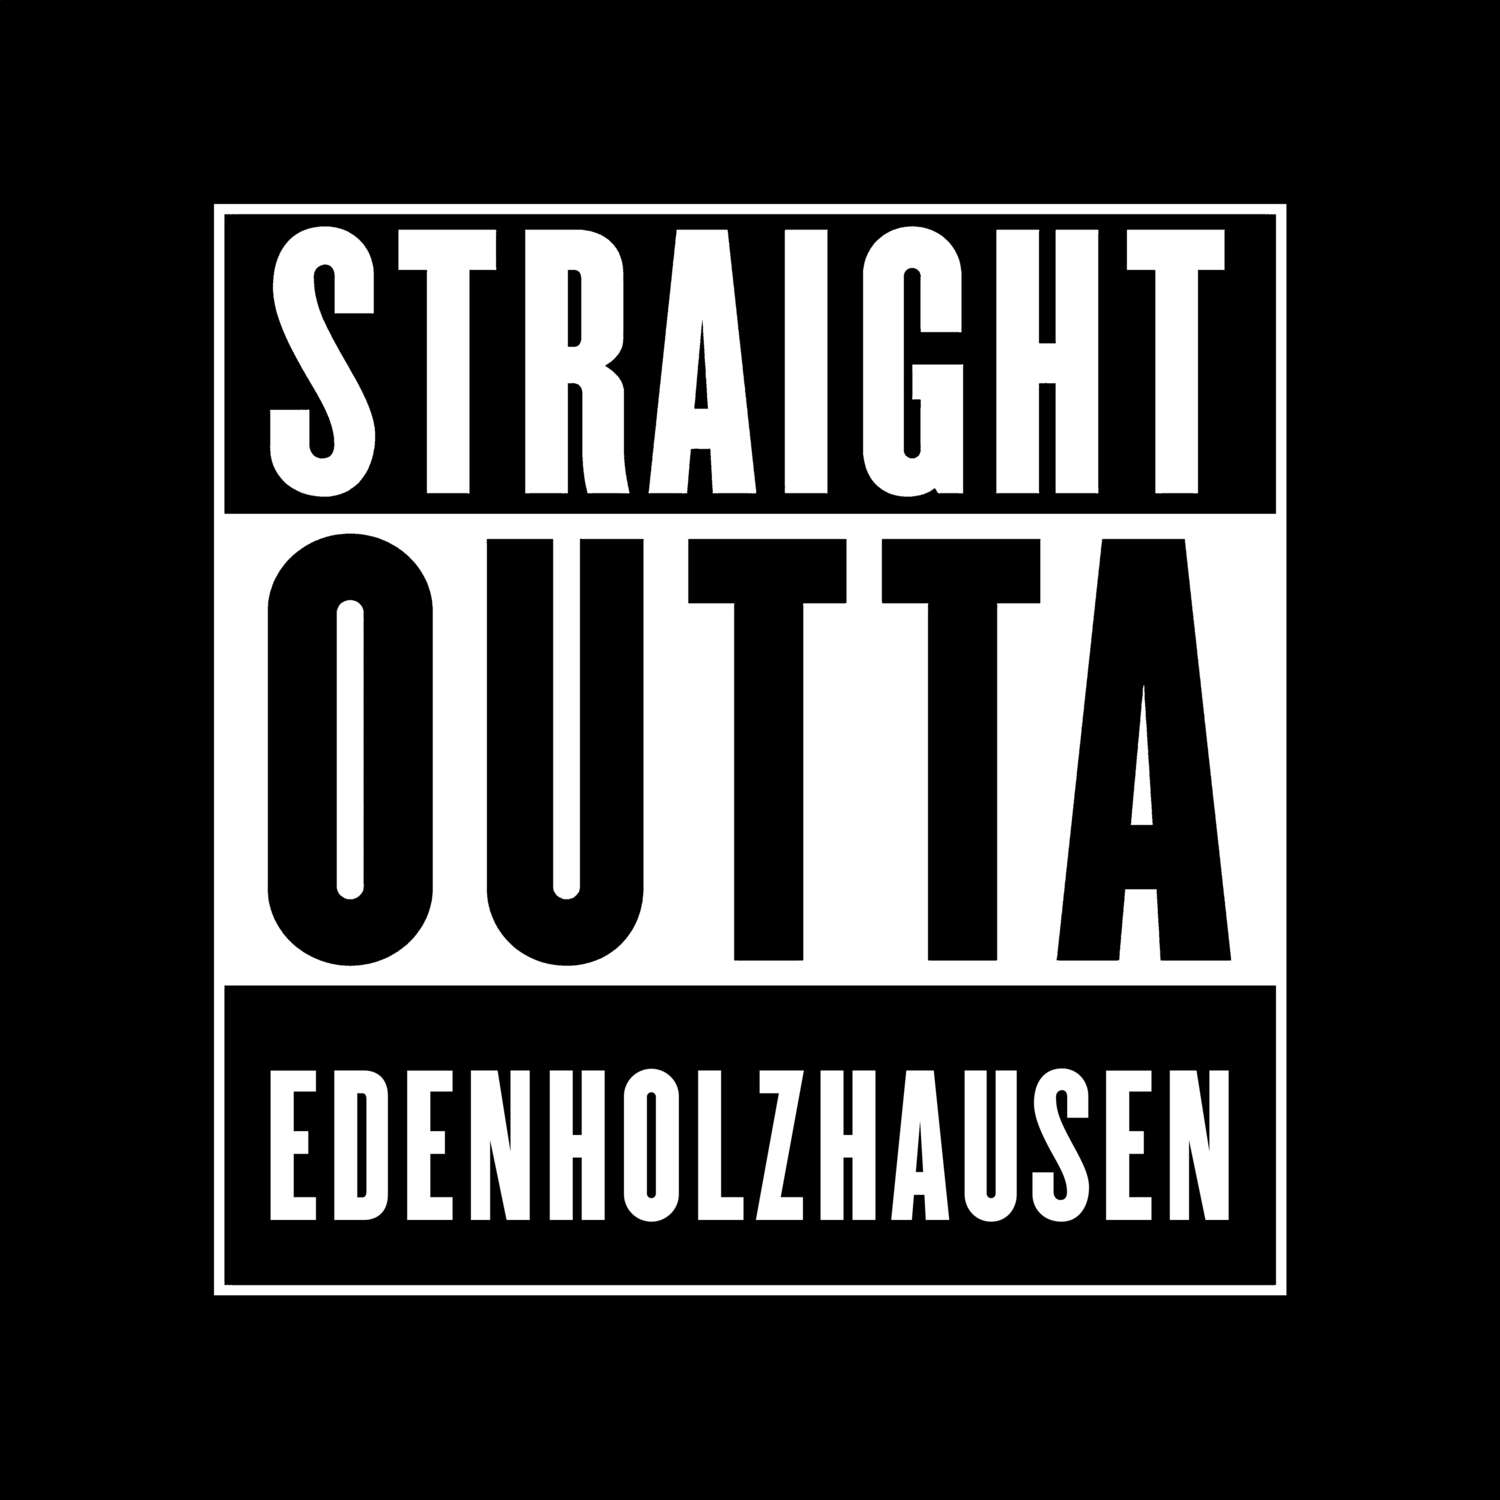 Edenholzhausen T-Shirt »Straight Outta«